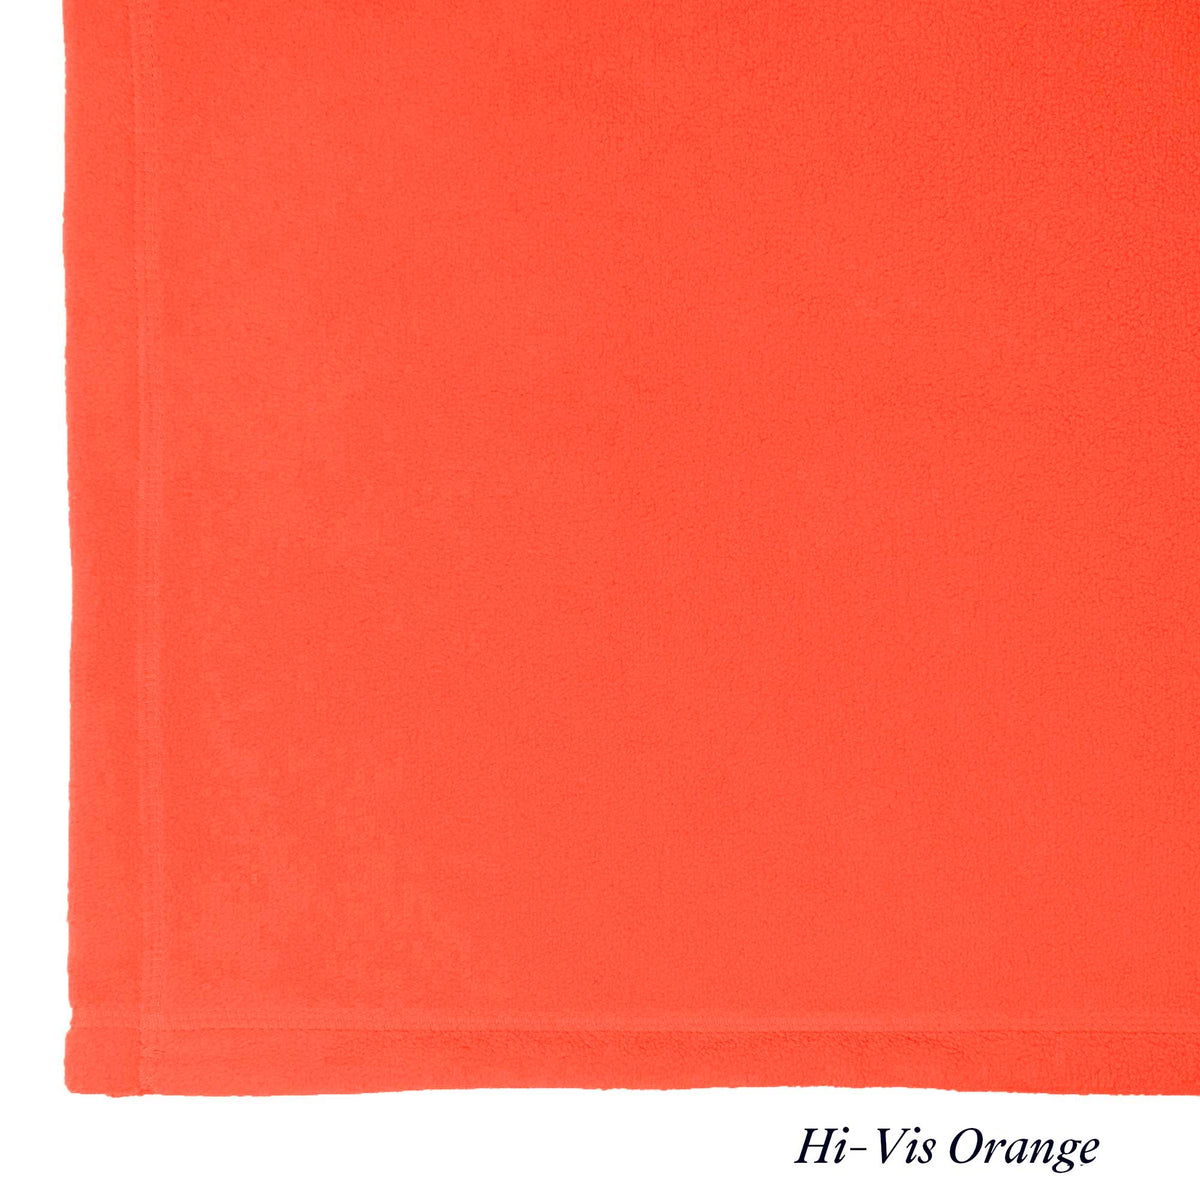 Hi Vis Orange - Emergency Blanket - Peaceful Touch - American Blanket Company